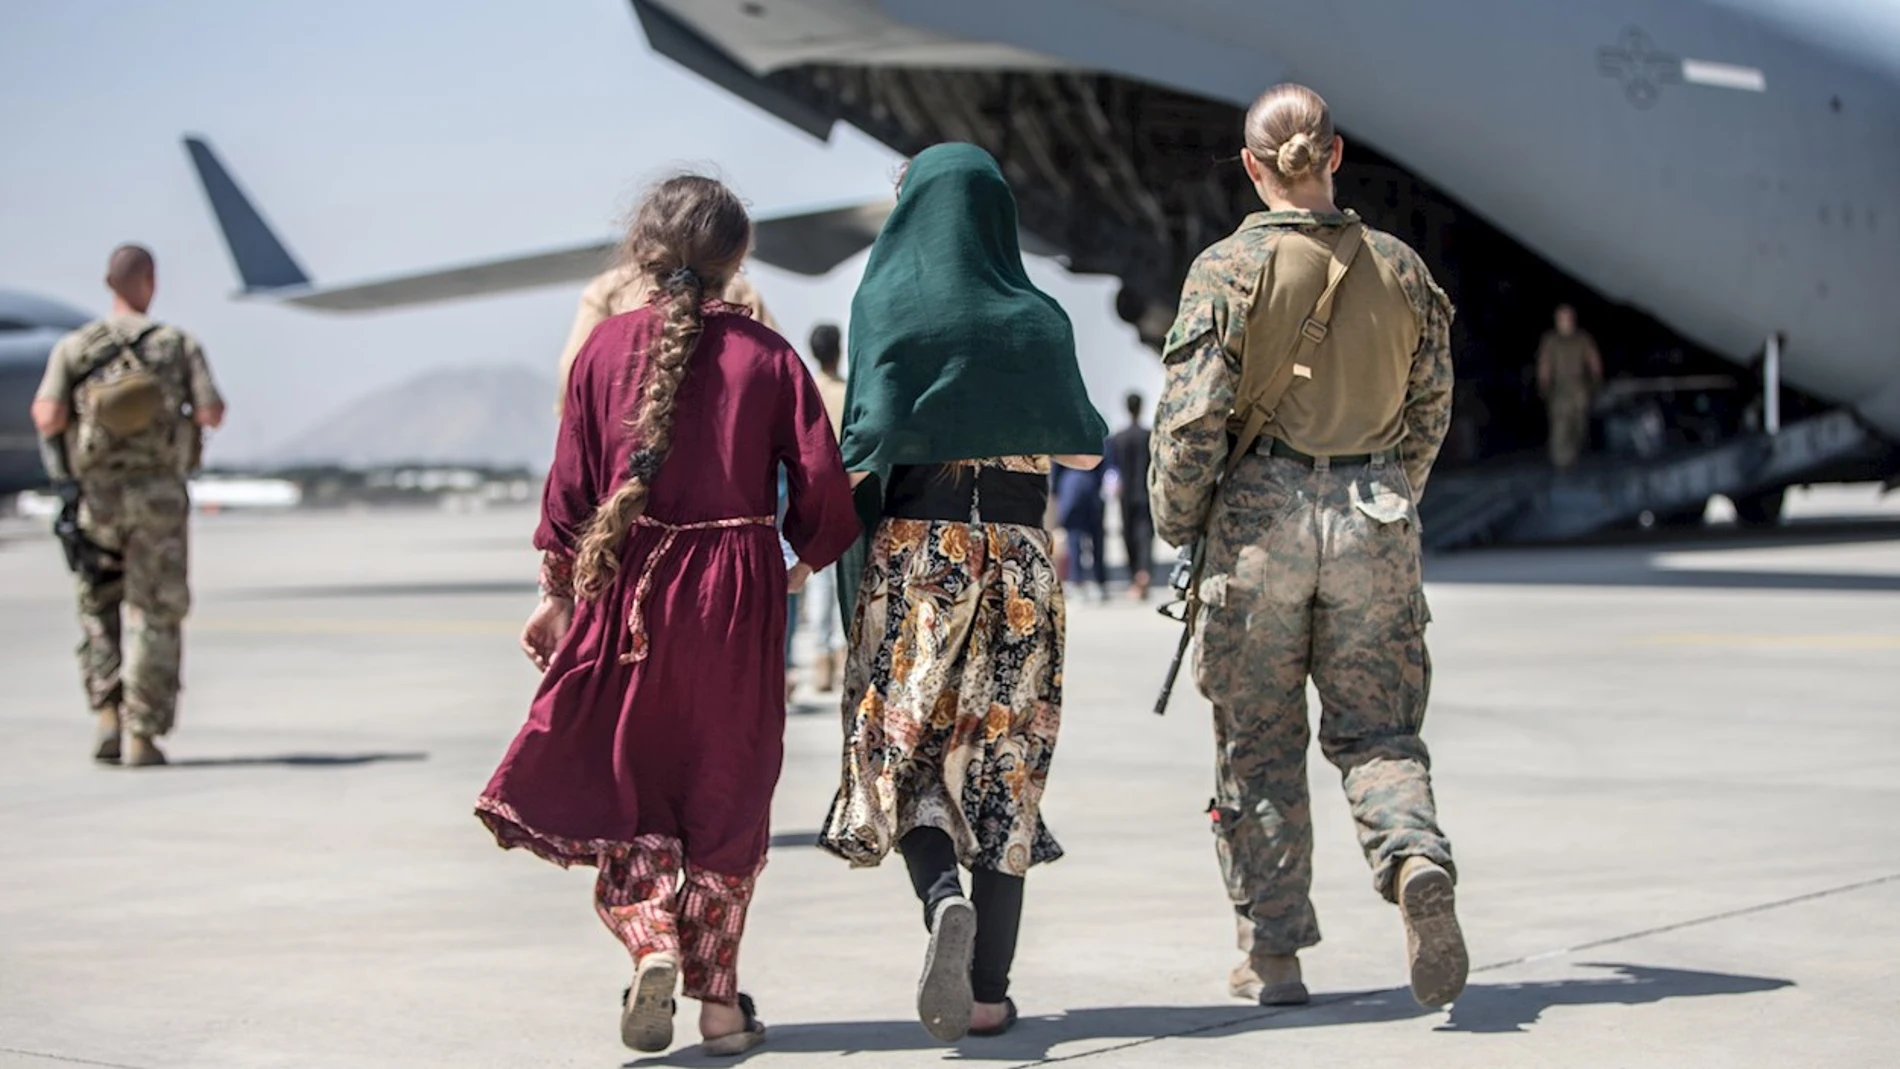 Una soldado acompaña a dos chicas afganas a un avión